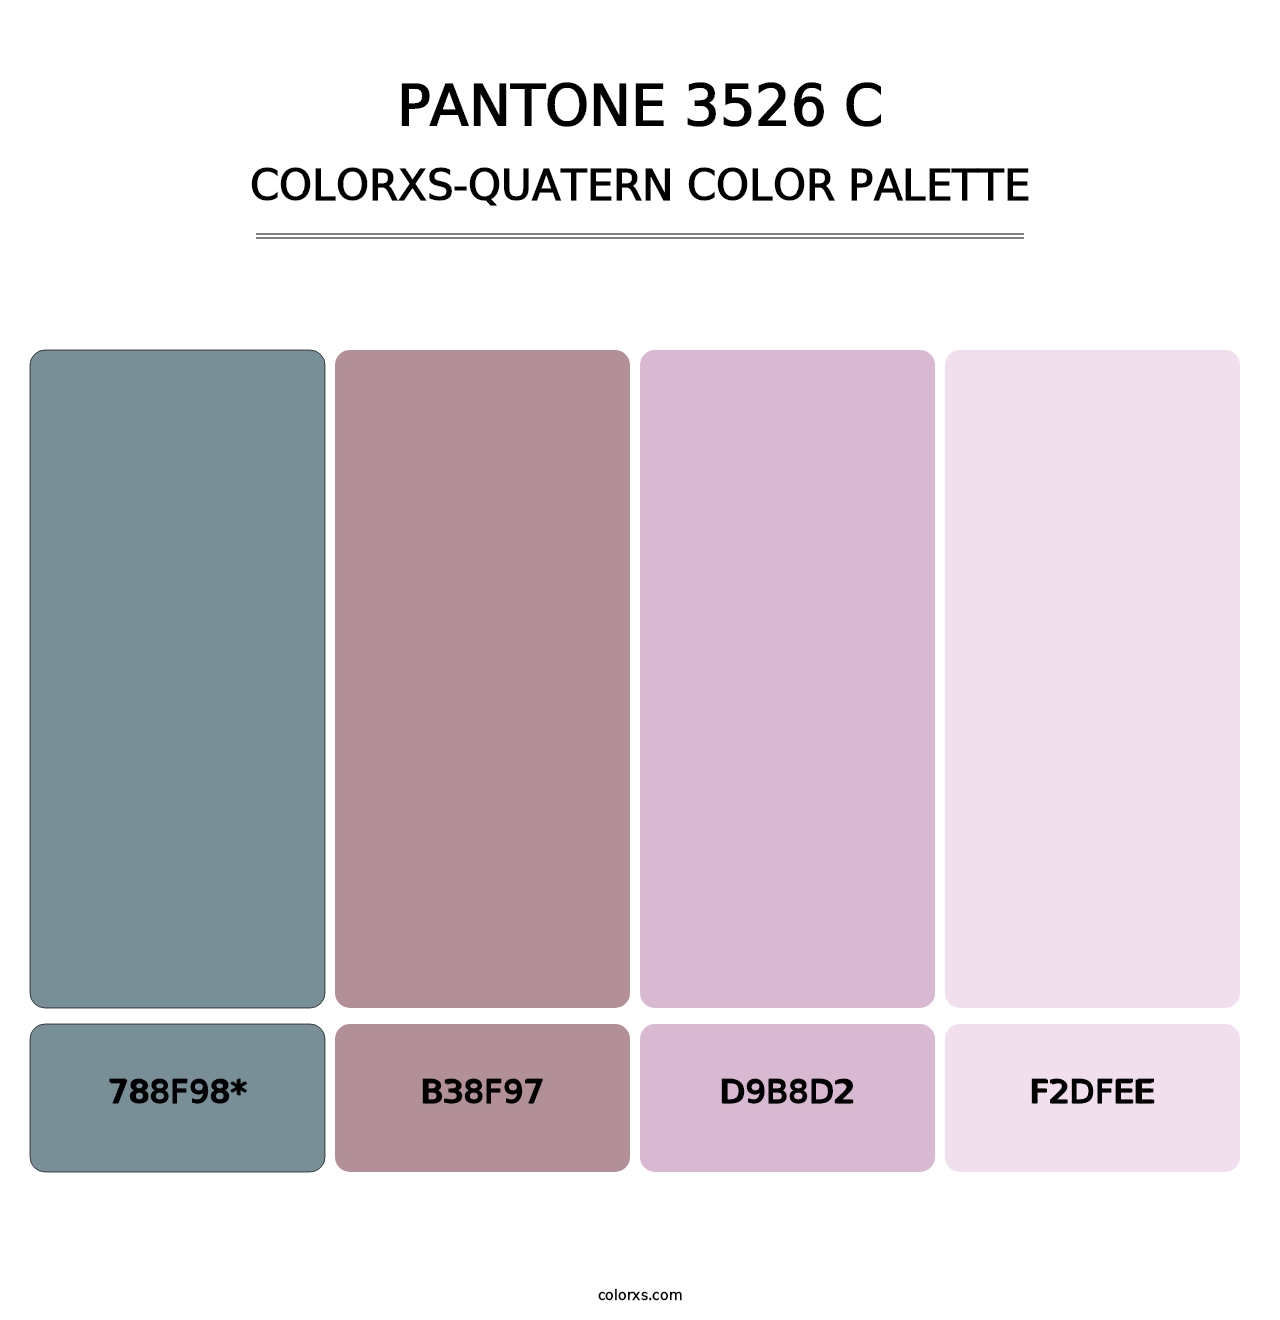 PANTONE 3526 C - Colorxs Quatern Palette